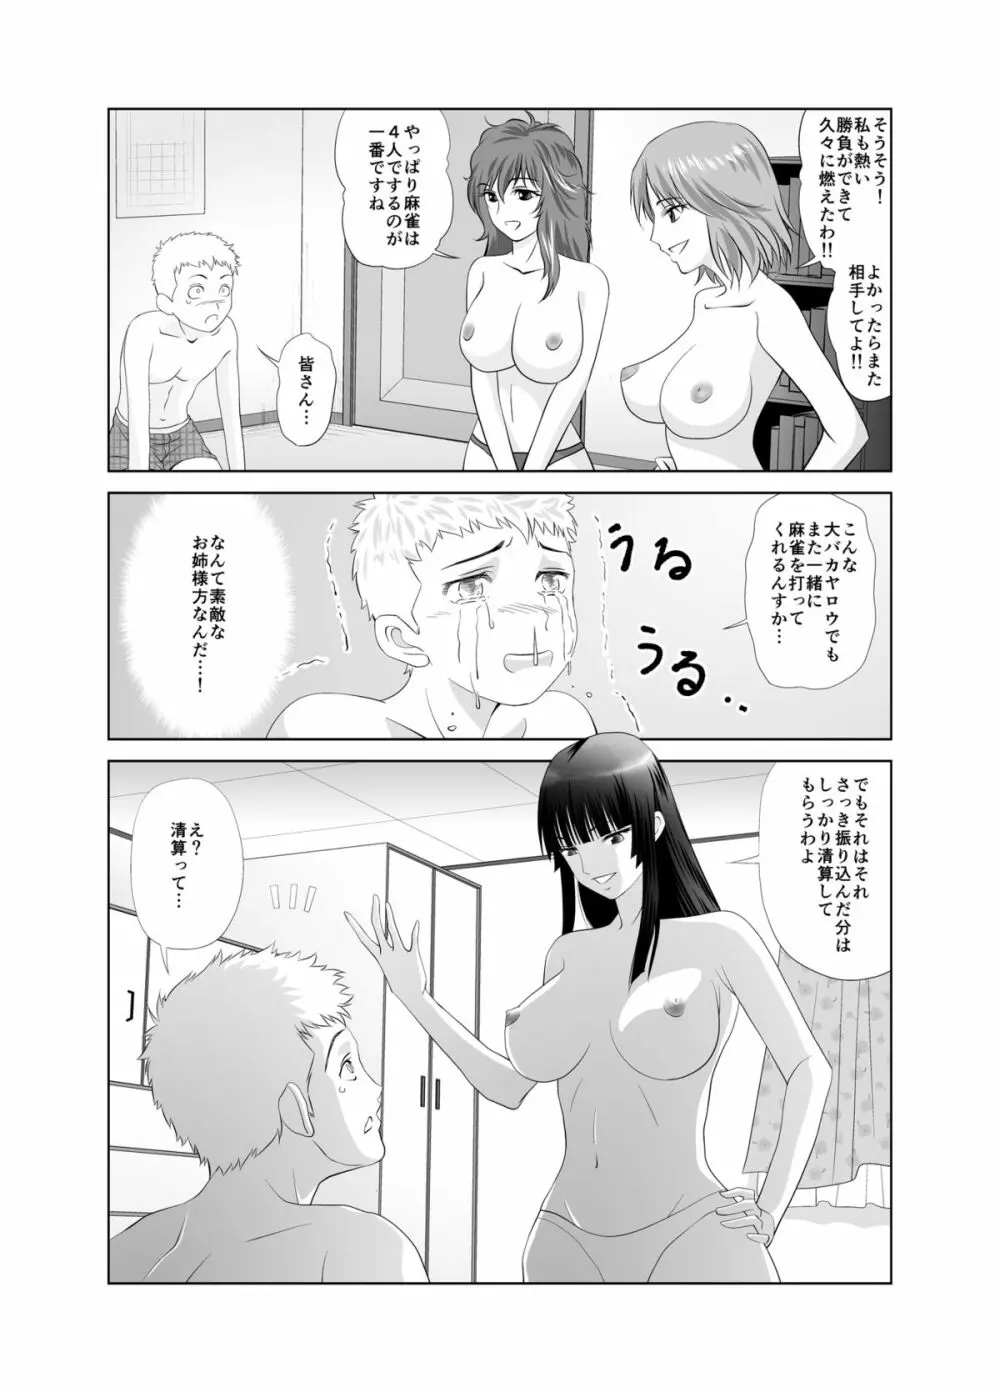 脱衣麻雀～漫画編～【完成版】 31ページ